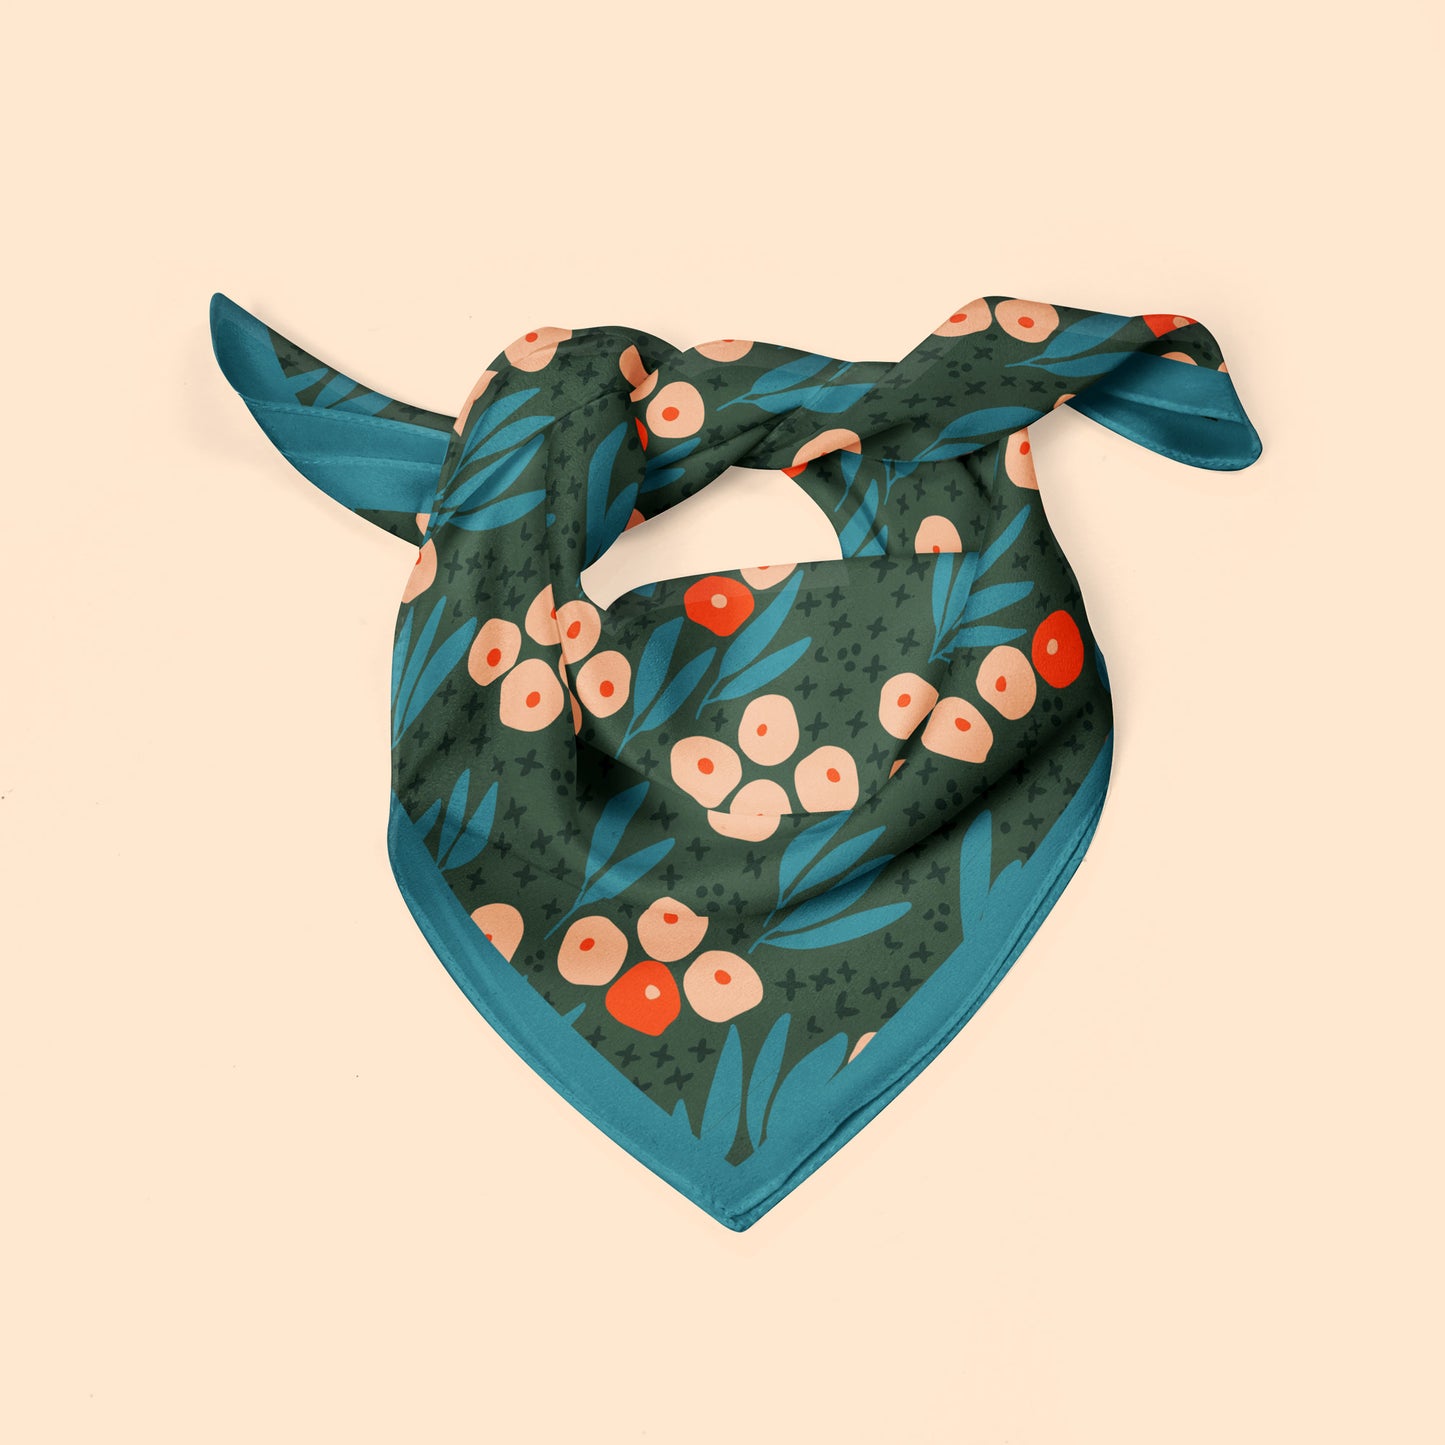 Scandi Garden square silk scarf in blue, green and orange